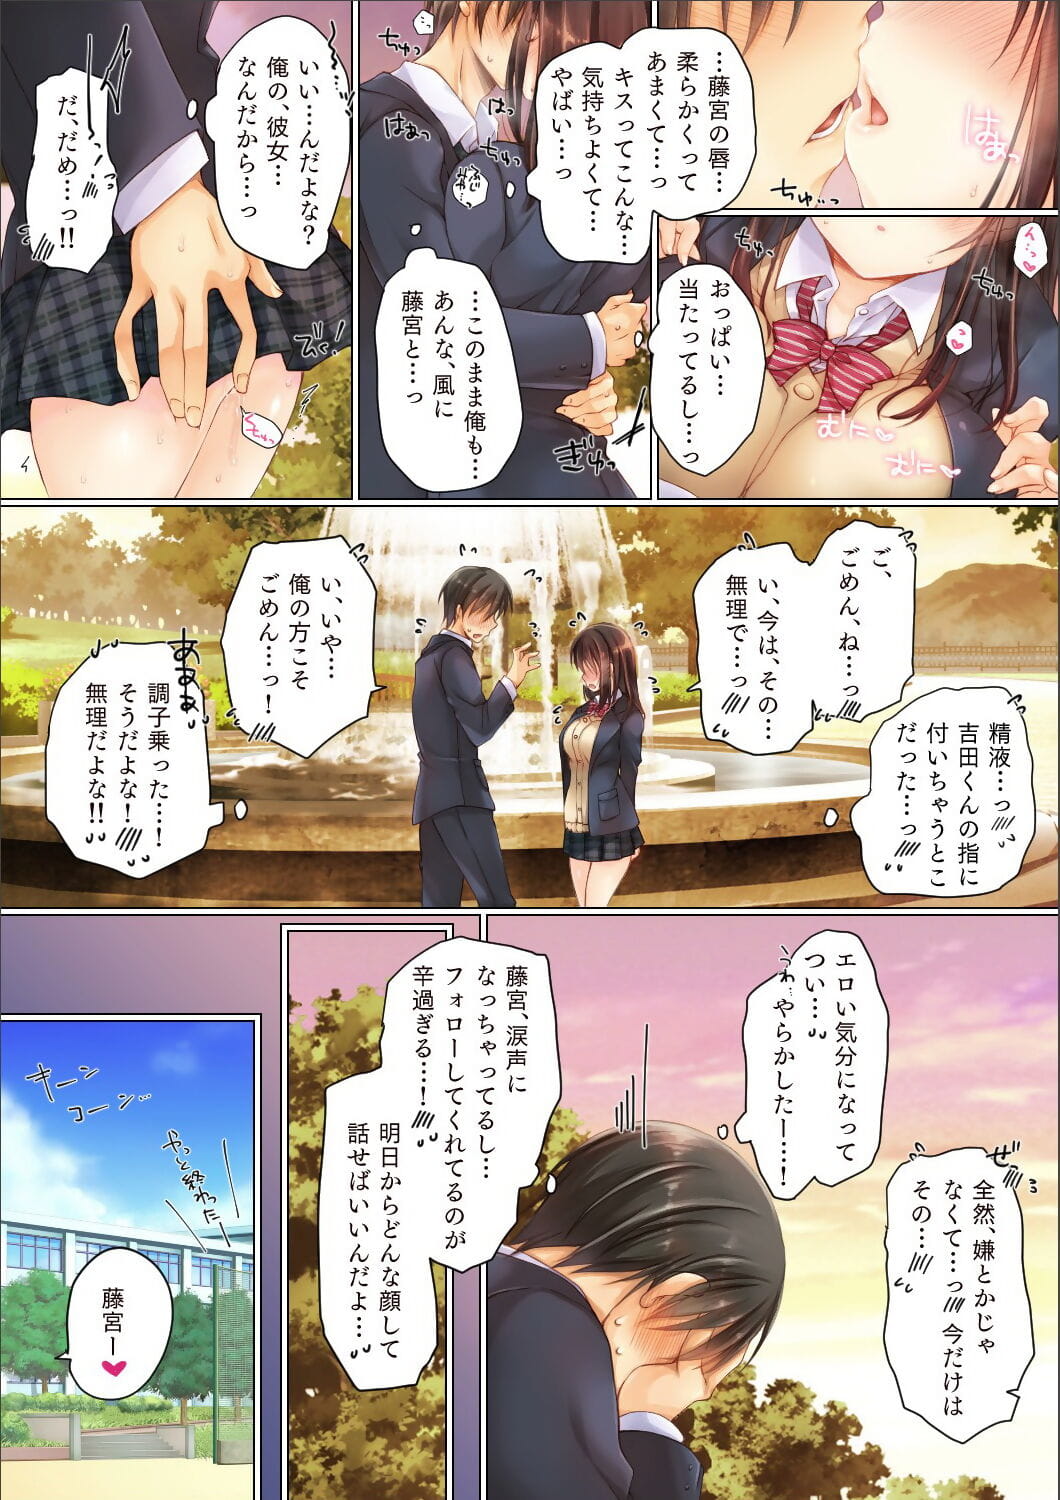 netorare 학원 seikatsu page 1